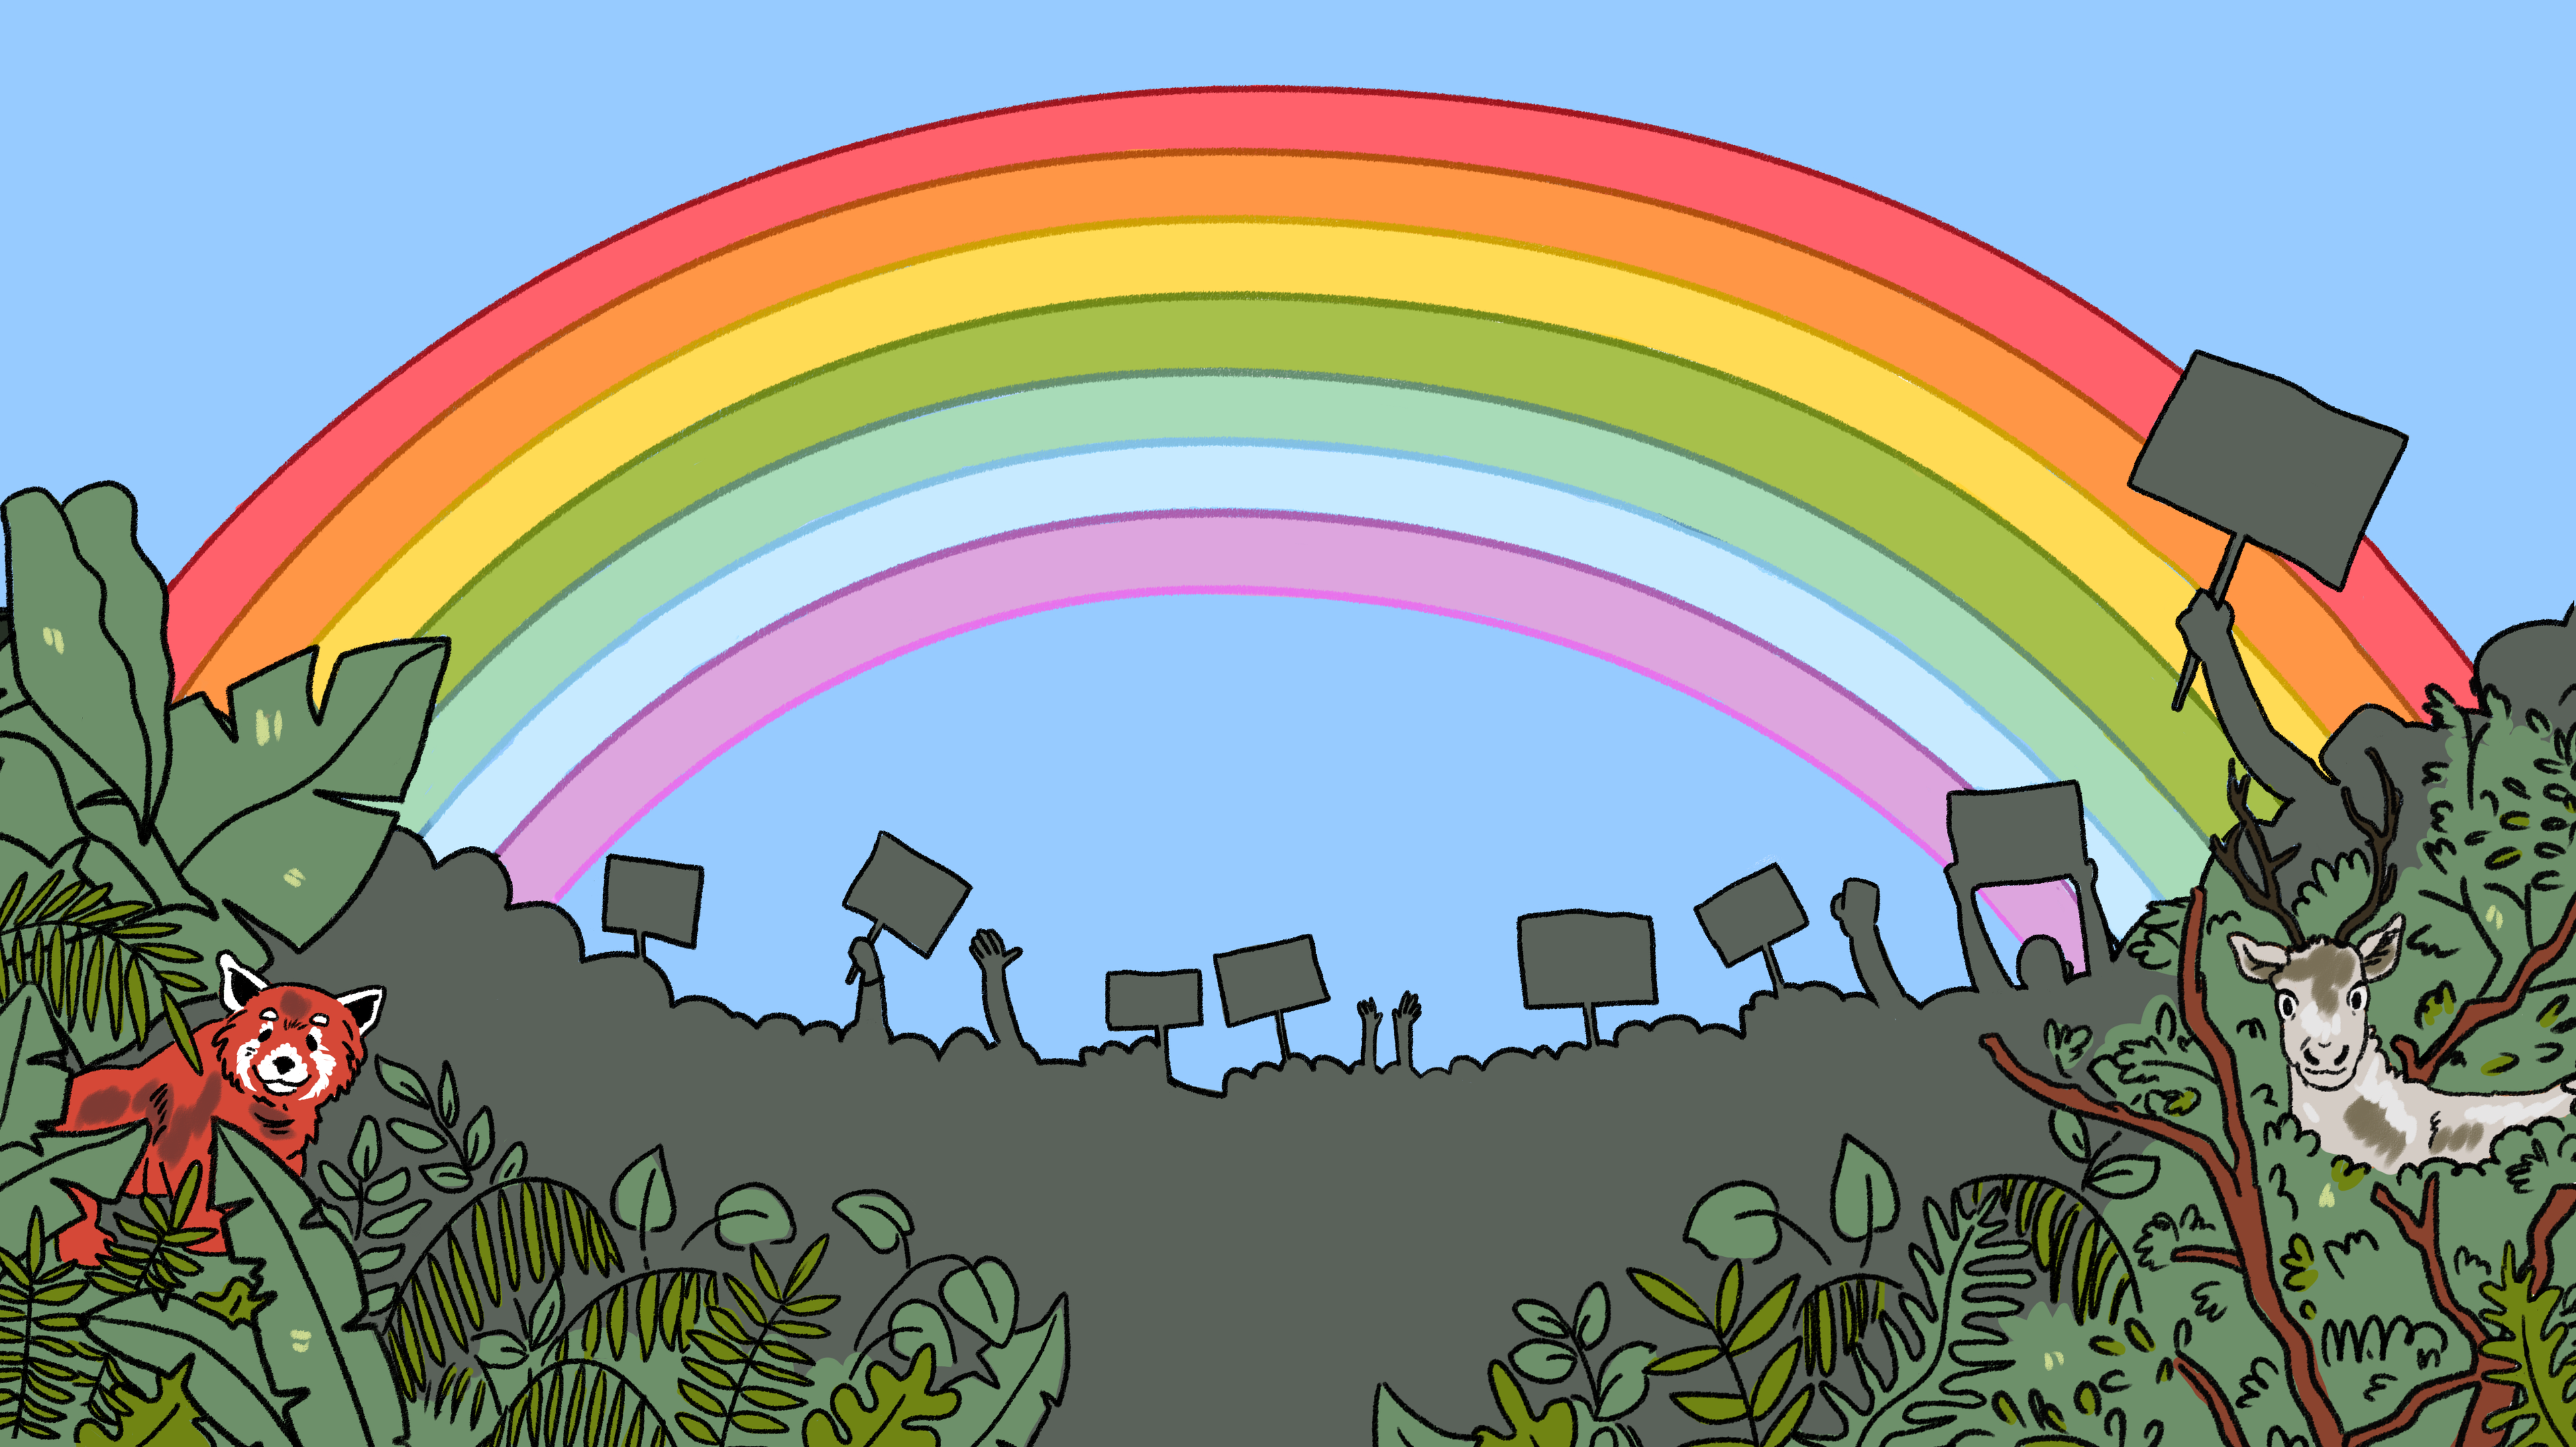 Illustrasjon av en demonstrasjon med plakater og hender i været. I forkan er det dyr og planter. I bakgrunnen ser vi en regnbue.